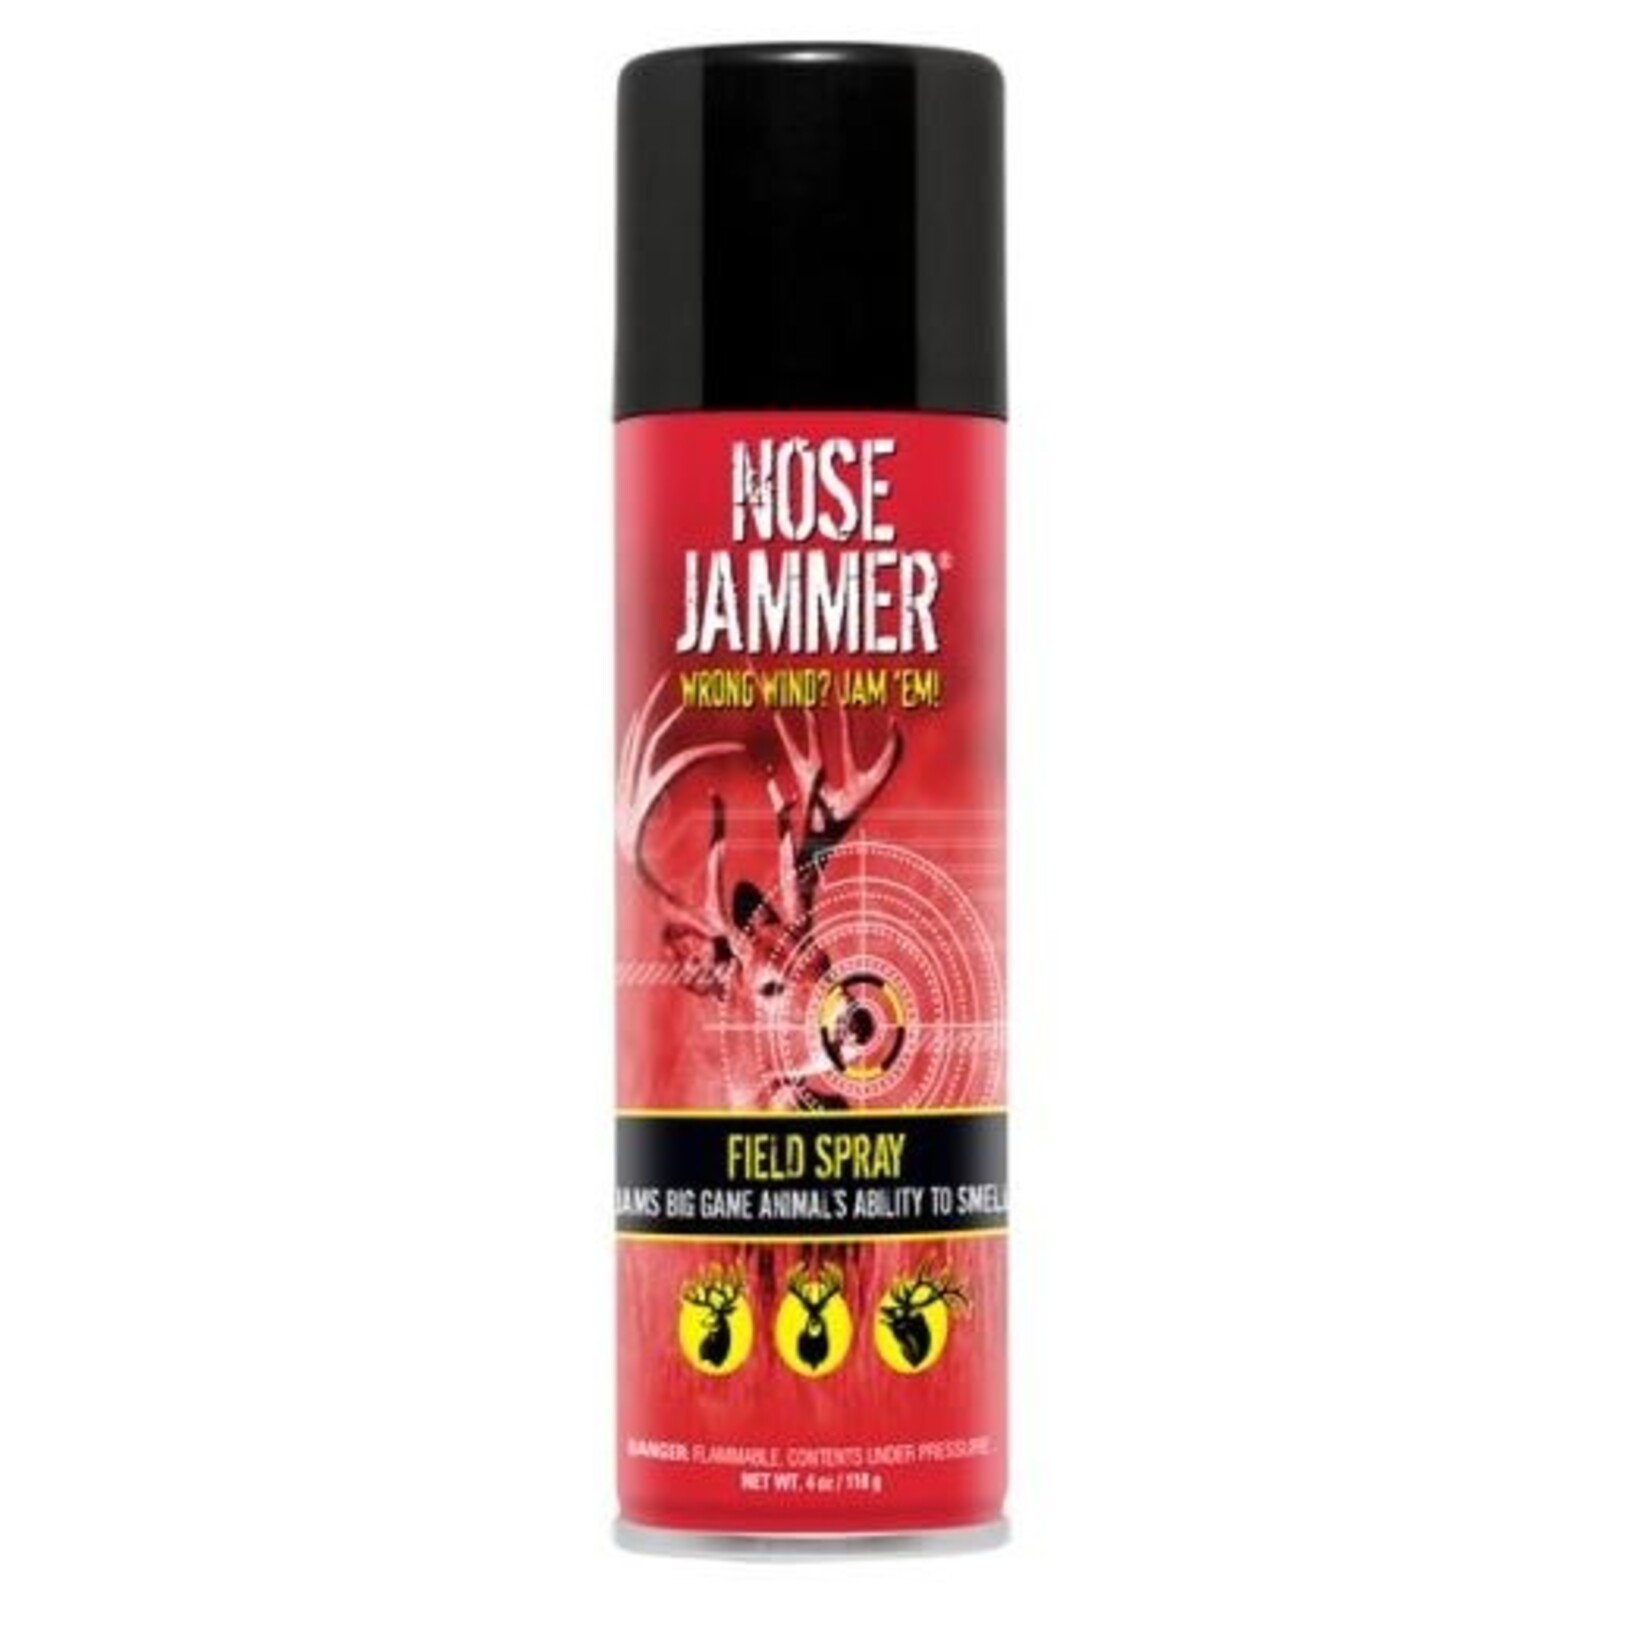 Nose Jammer Nose Jammer Field Spray